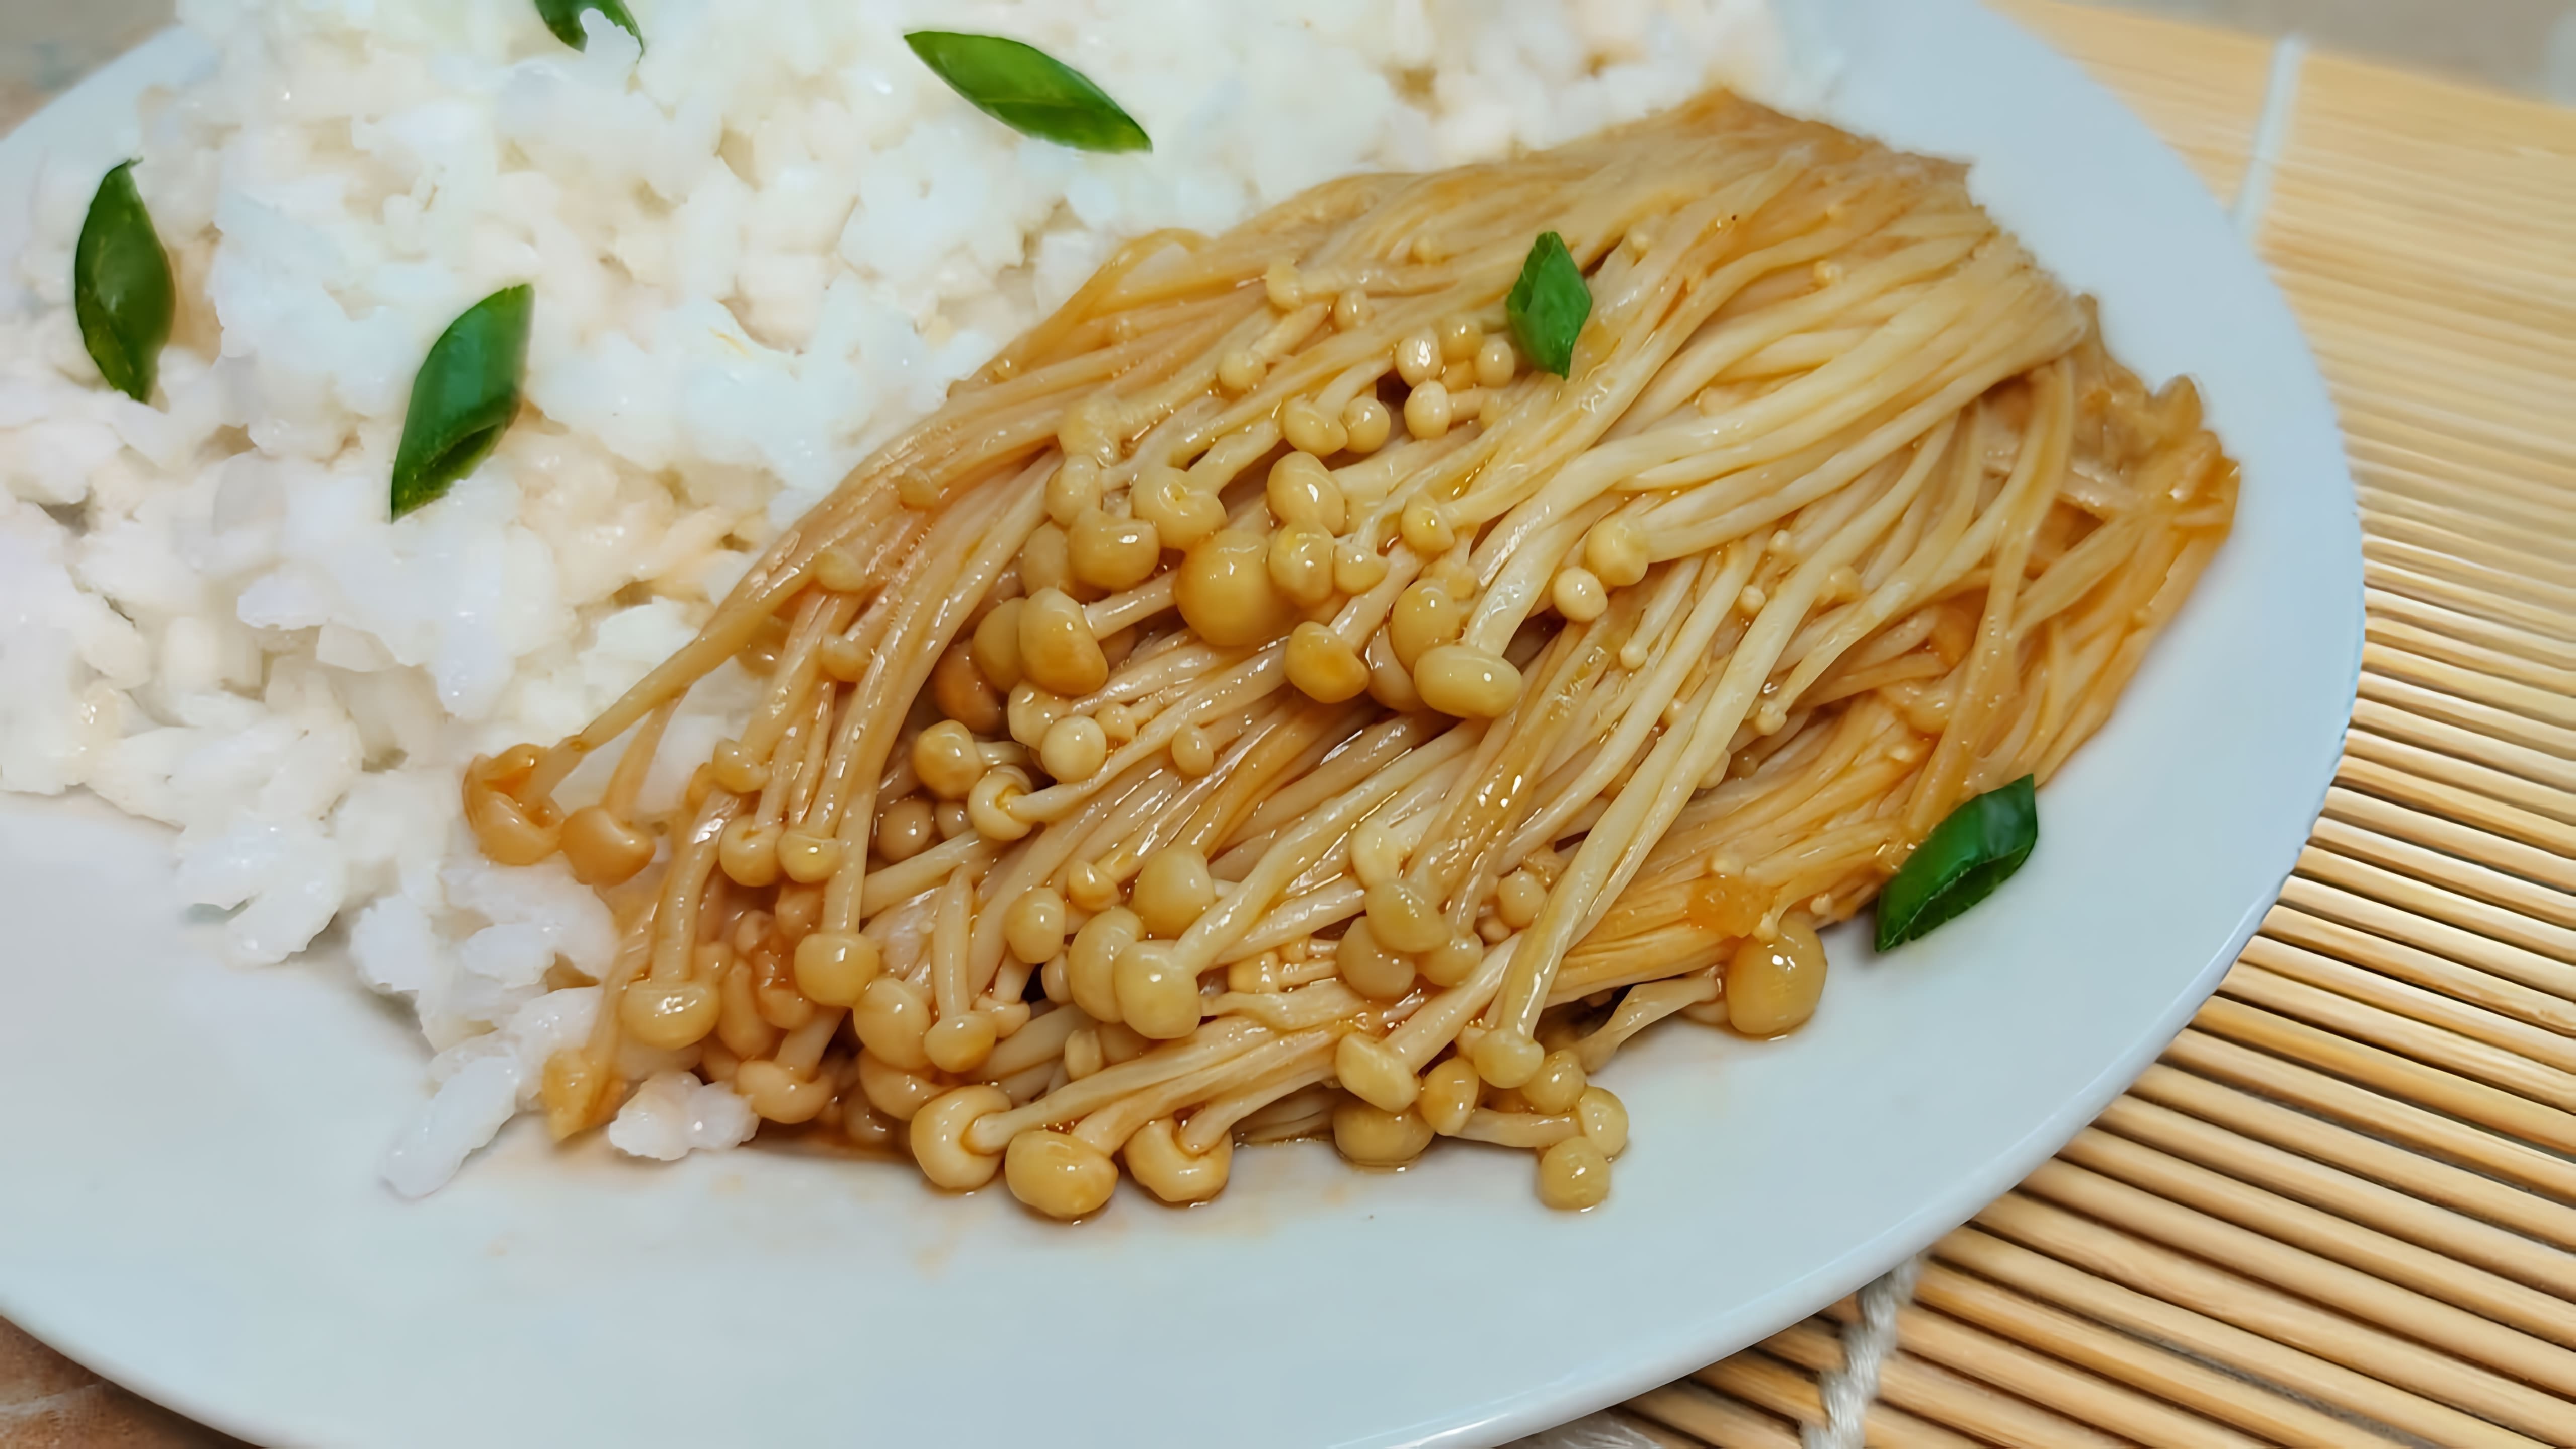 В этом видео демонстрируется рецепт приготовления грибов эноки в соусе по-корейски